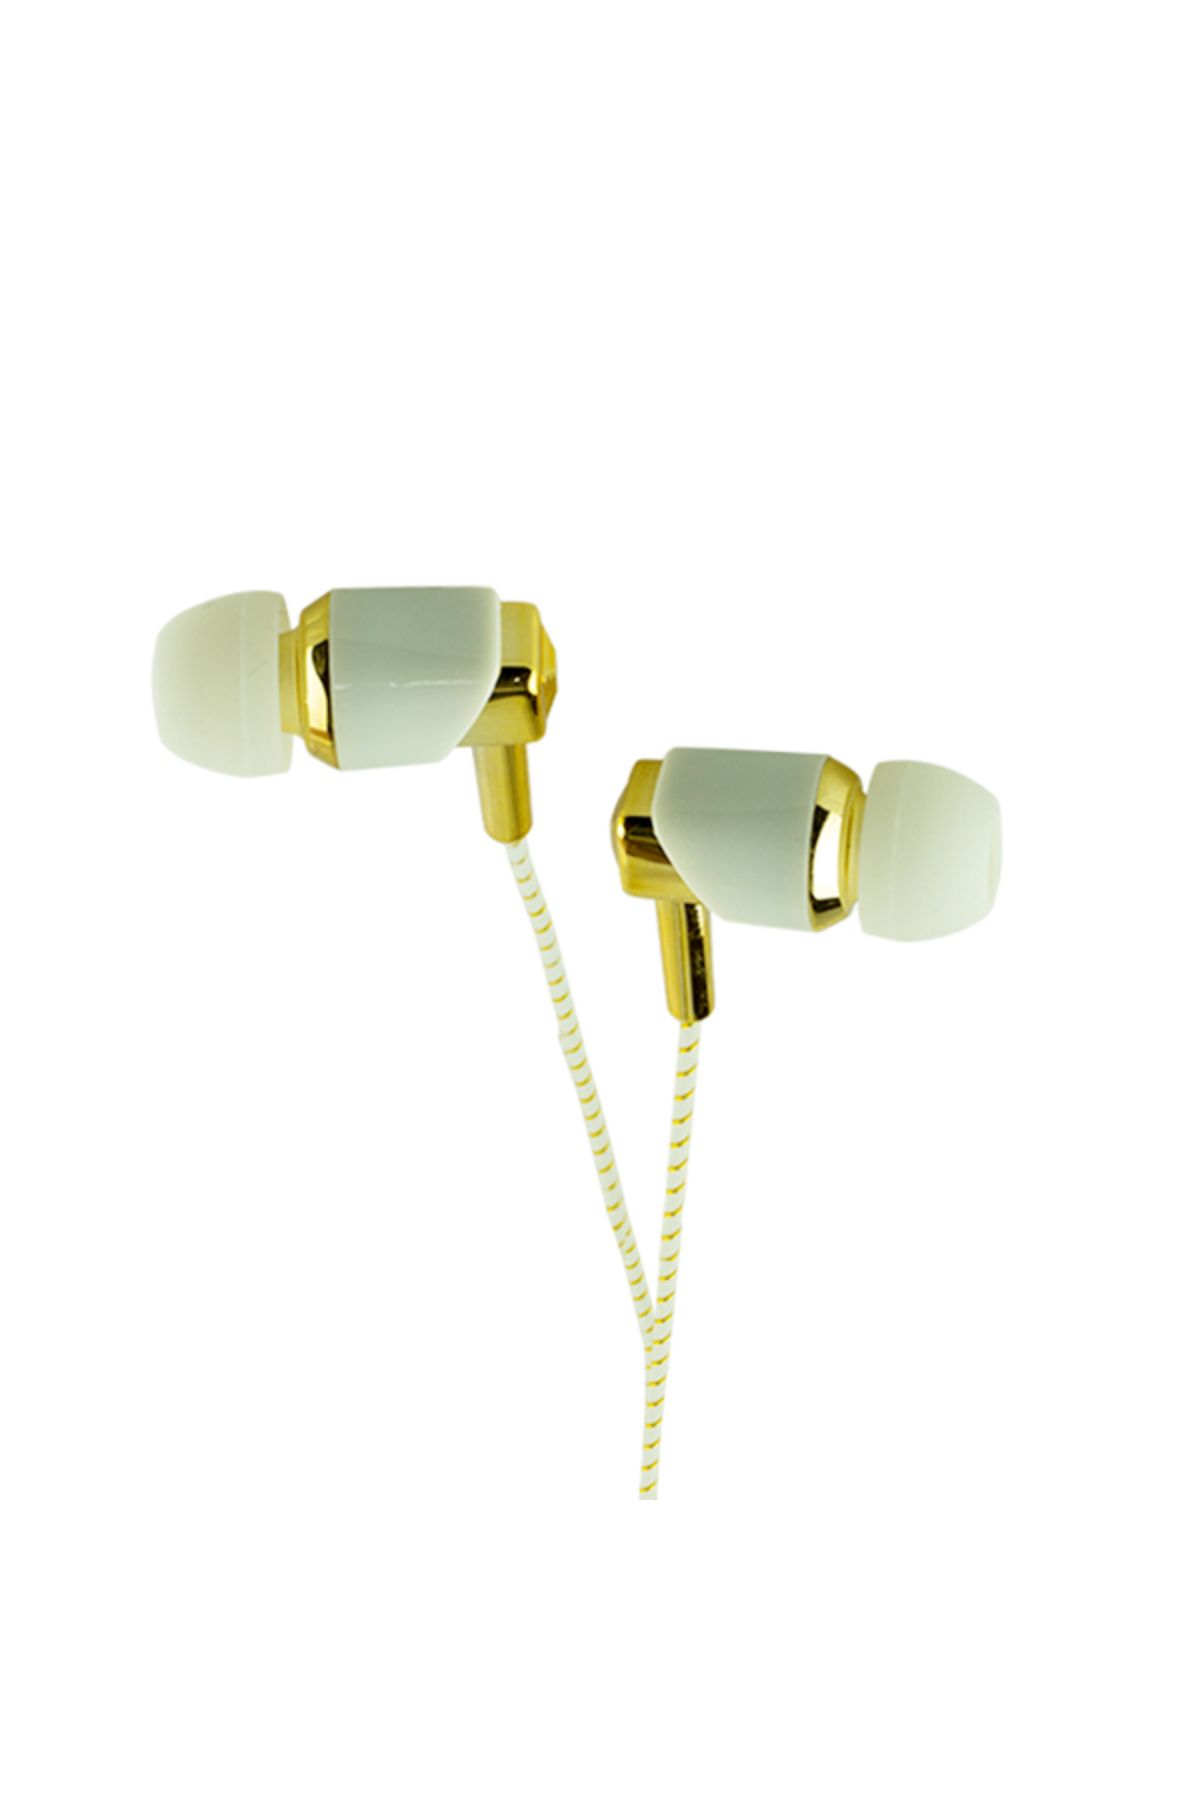 MasalUs W-8 Mikrofonlu Kulak İçi Kulaklık Gold * Gri 4434